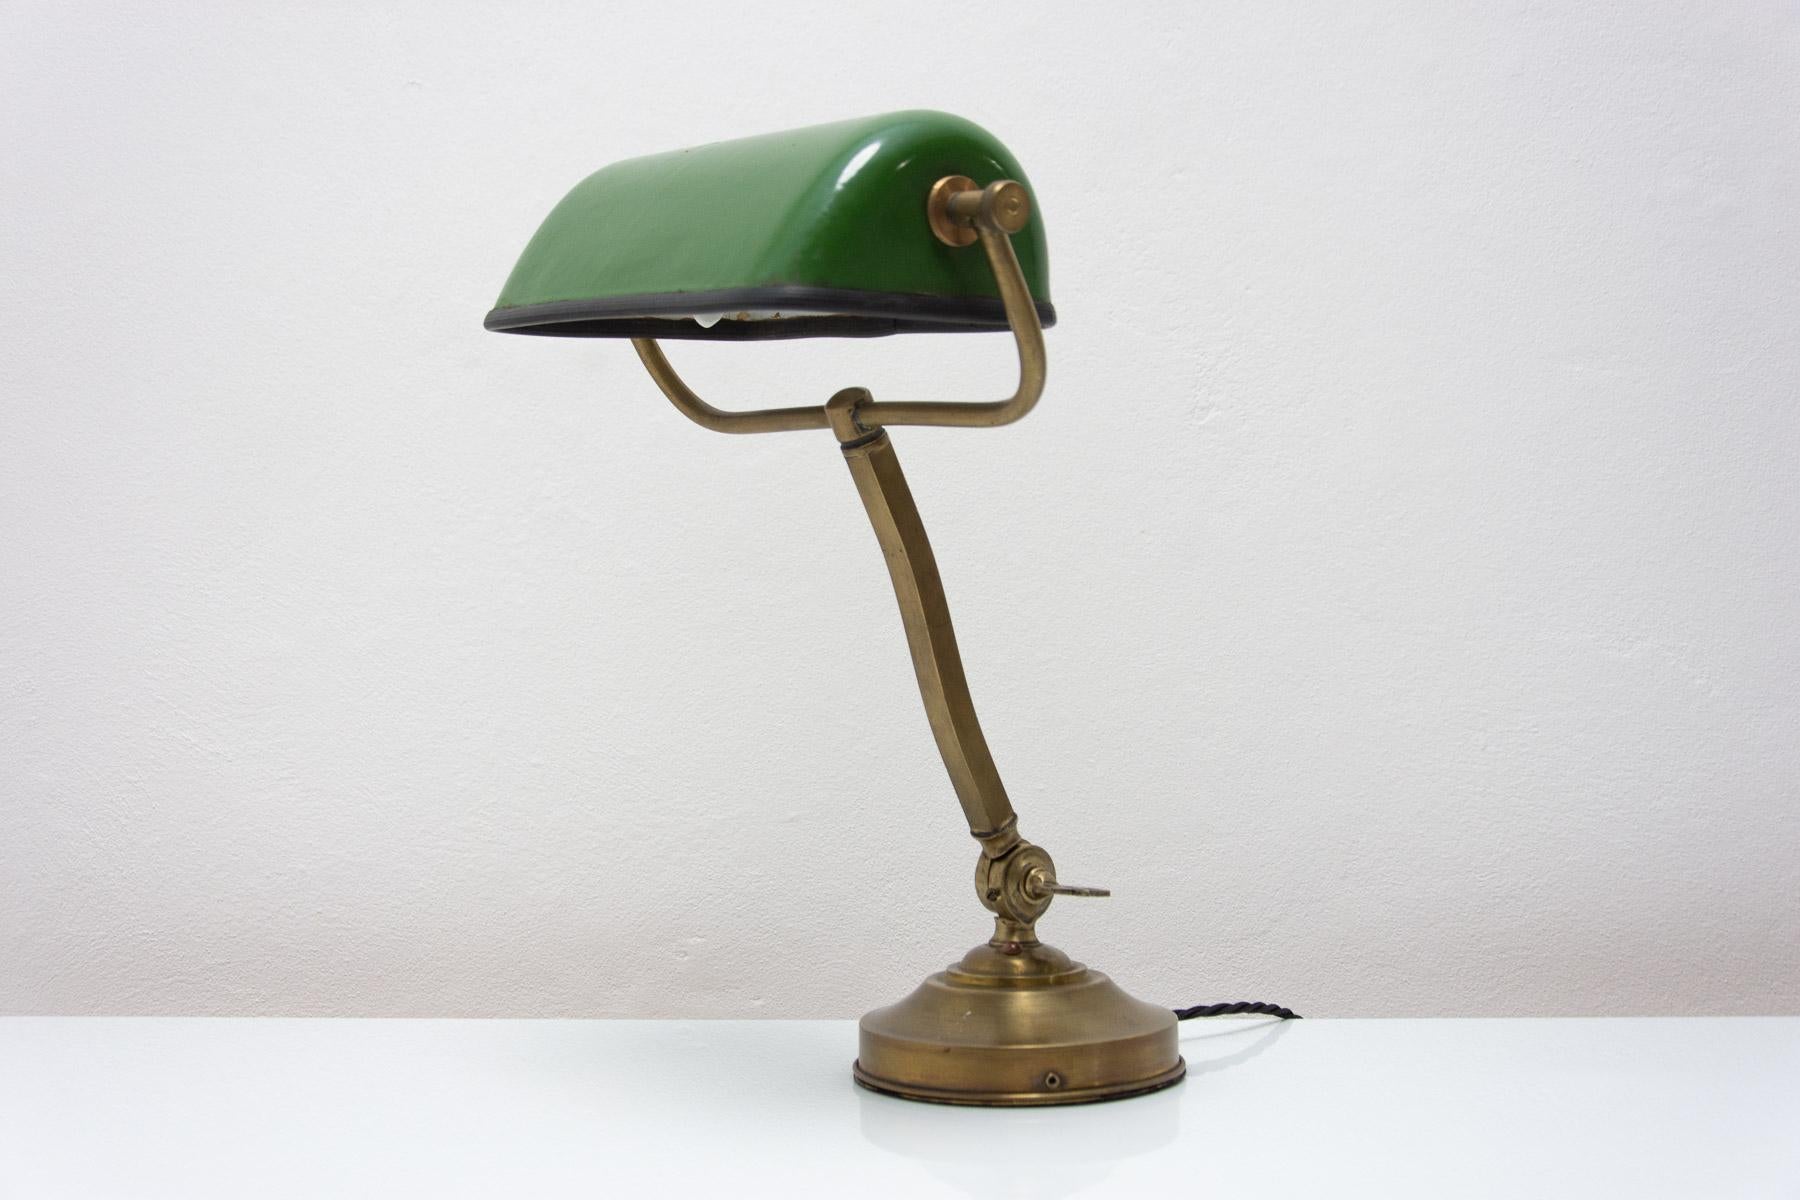 
Charakteristische Schreibtischlampe im Bauhaus-Stil, entworfen 1930 und hergestellt in Bohemia. Die Lampe hat einen verchromten Sockel und eine emaillierte Metallkappe. Ein fantastischer Look, der in viele Interieurs passt, in ausgezeichnetem